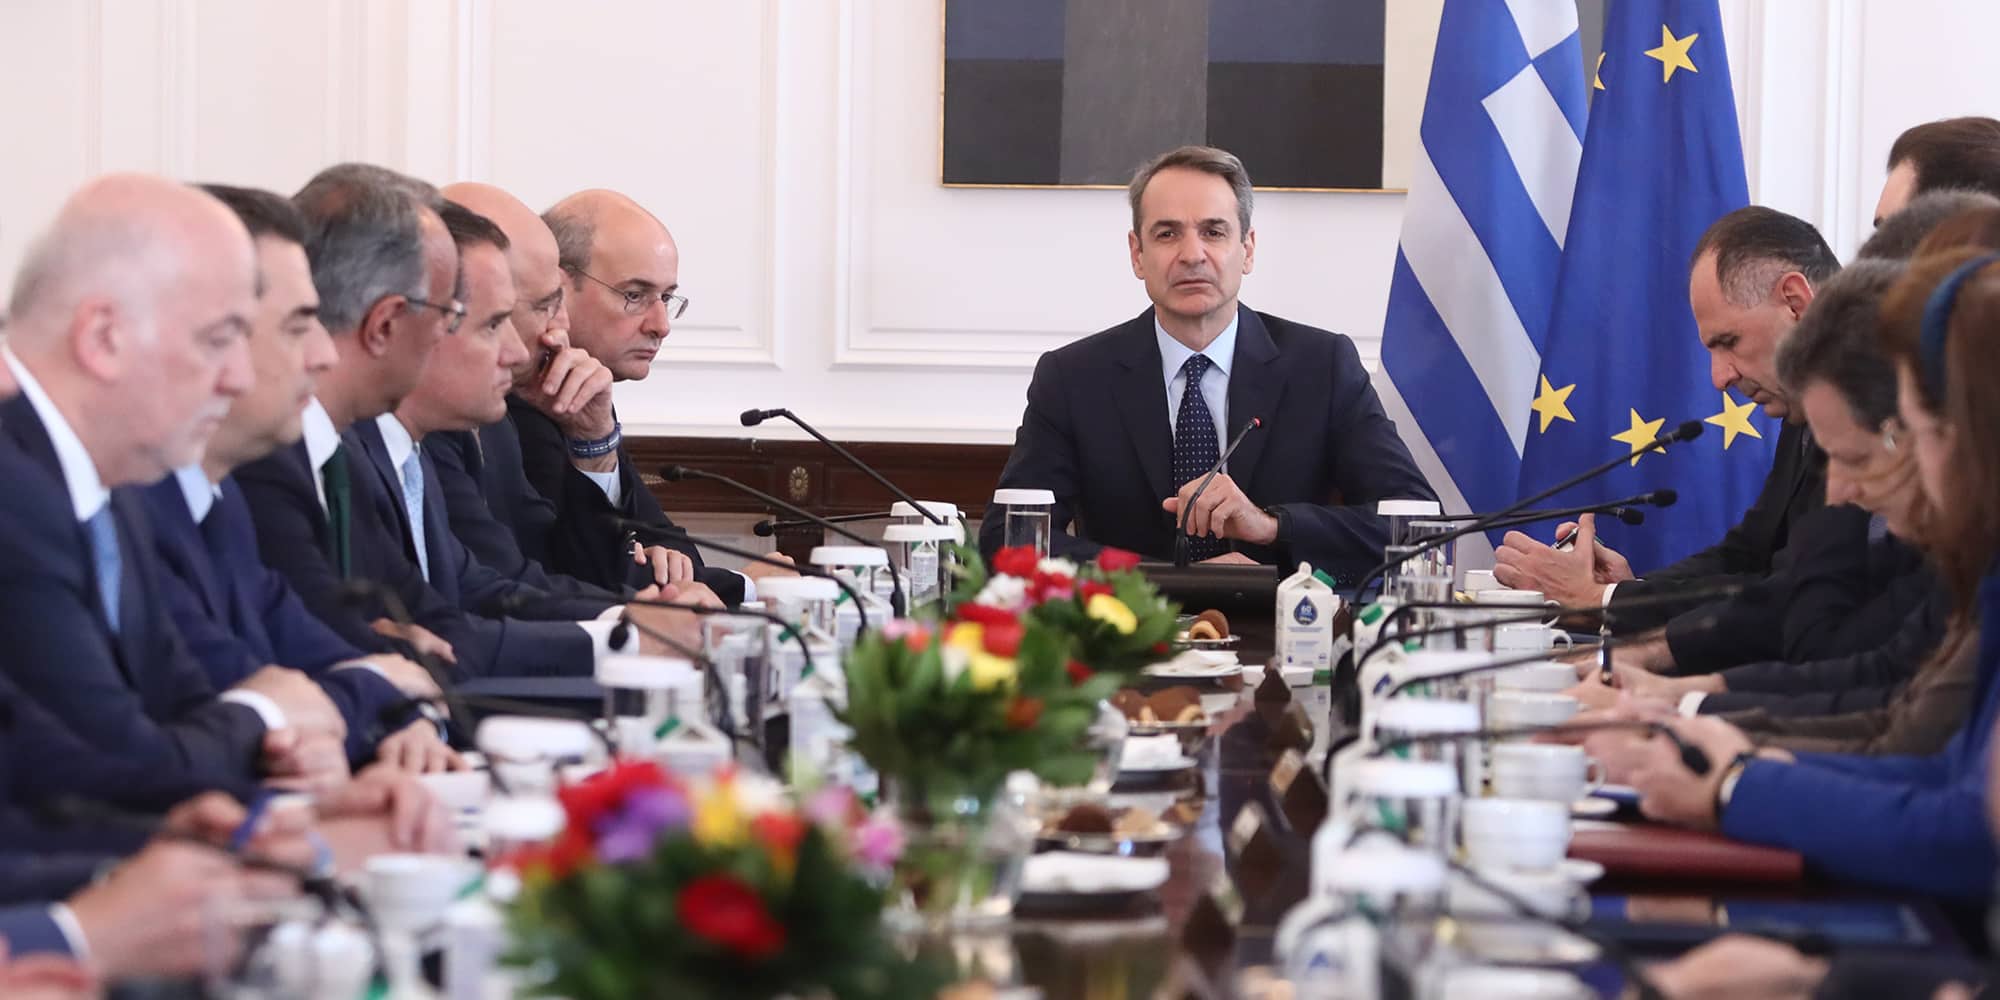 Ο Κυριάκος Μητσοτάκης σε συνάντηση με το υπουργικό συμβούλιο